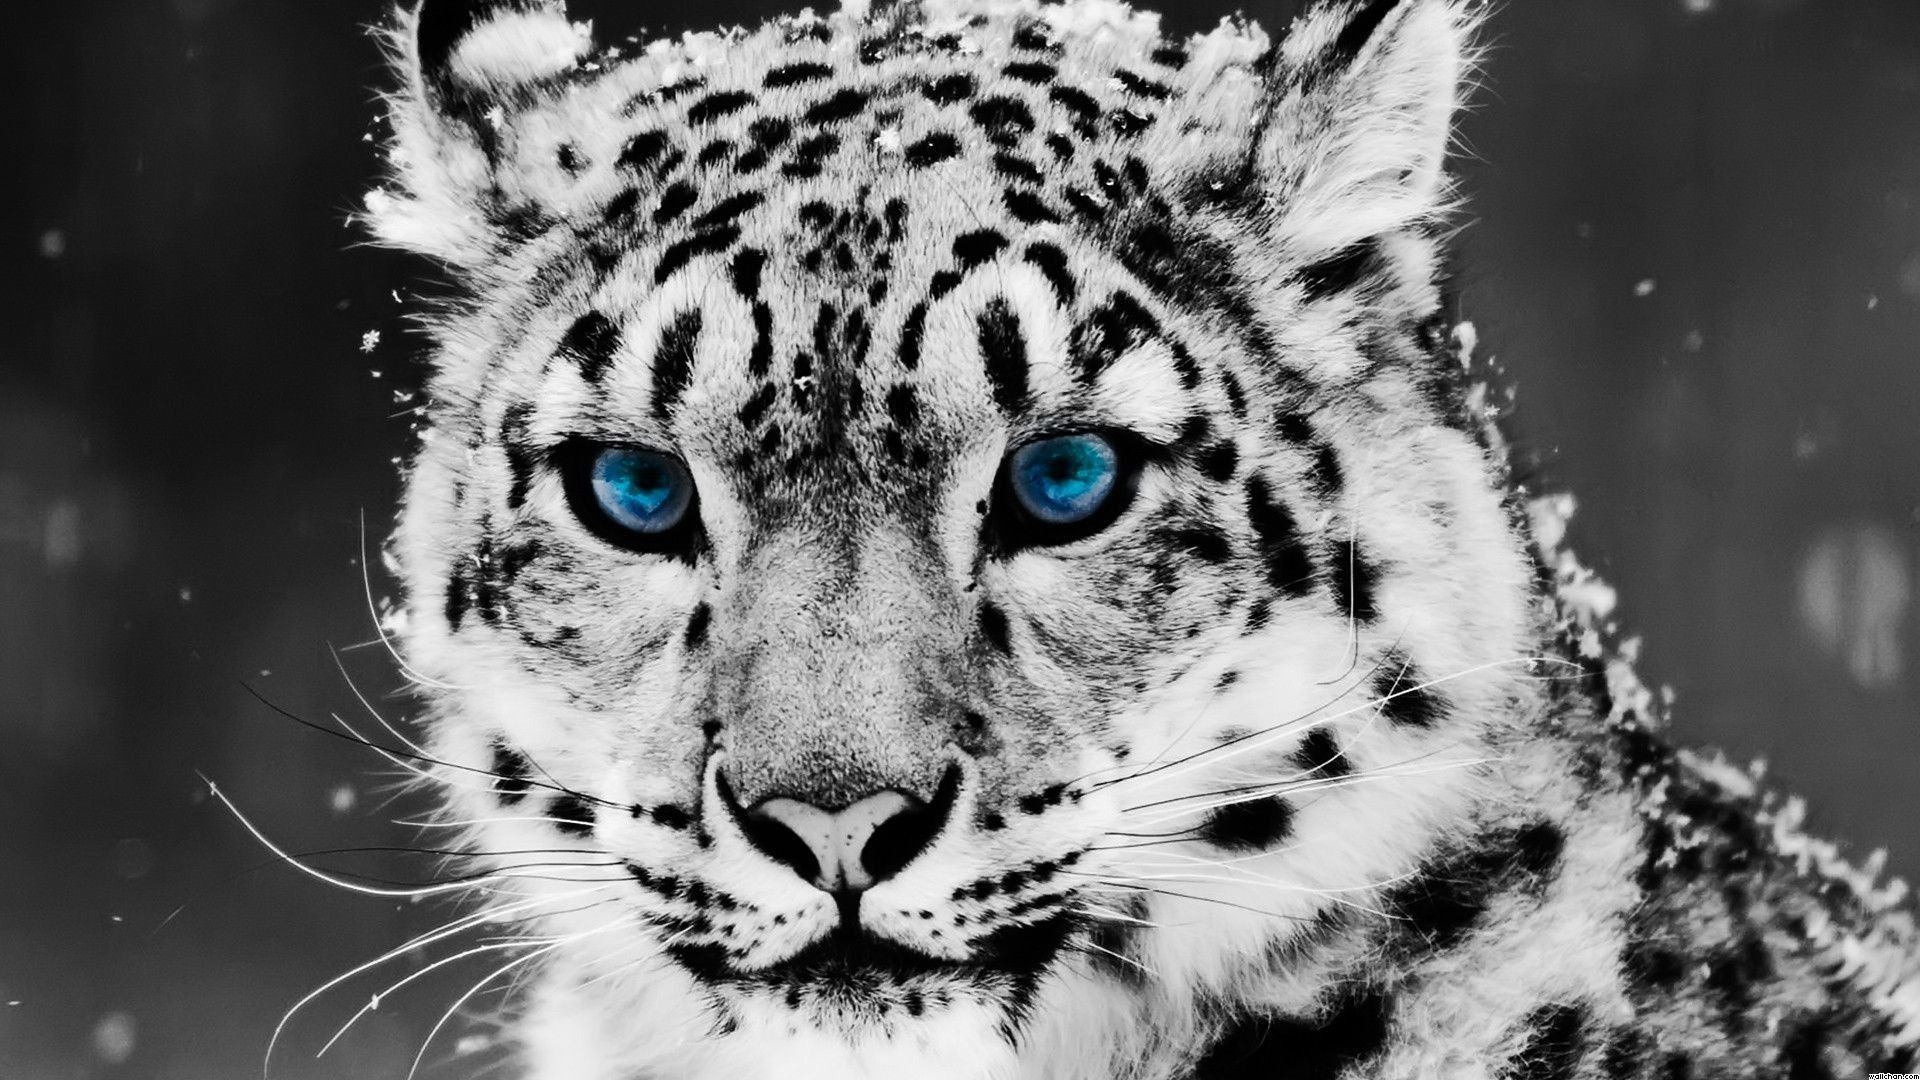 Black jaguar 1080P 2K 4K 5K HD wallpapers free download  Wallpaper Flare